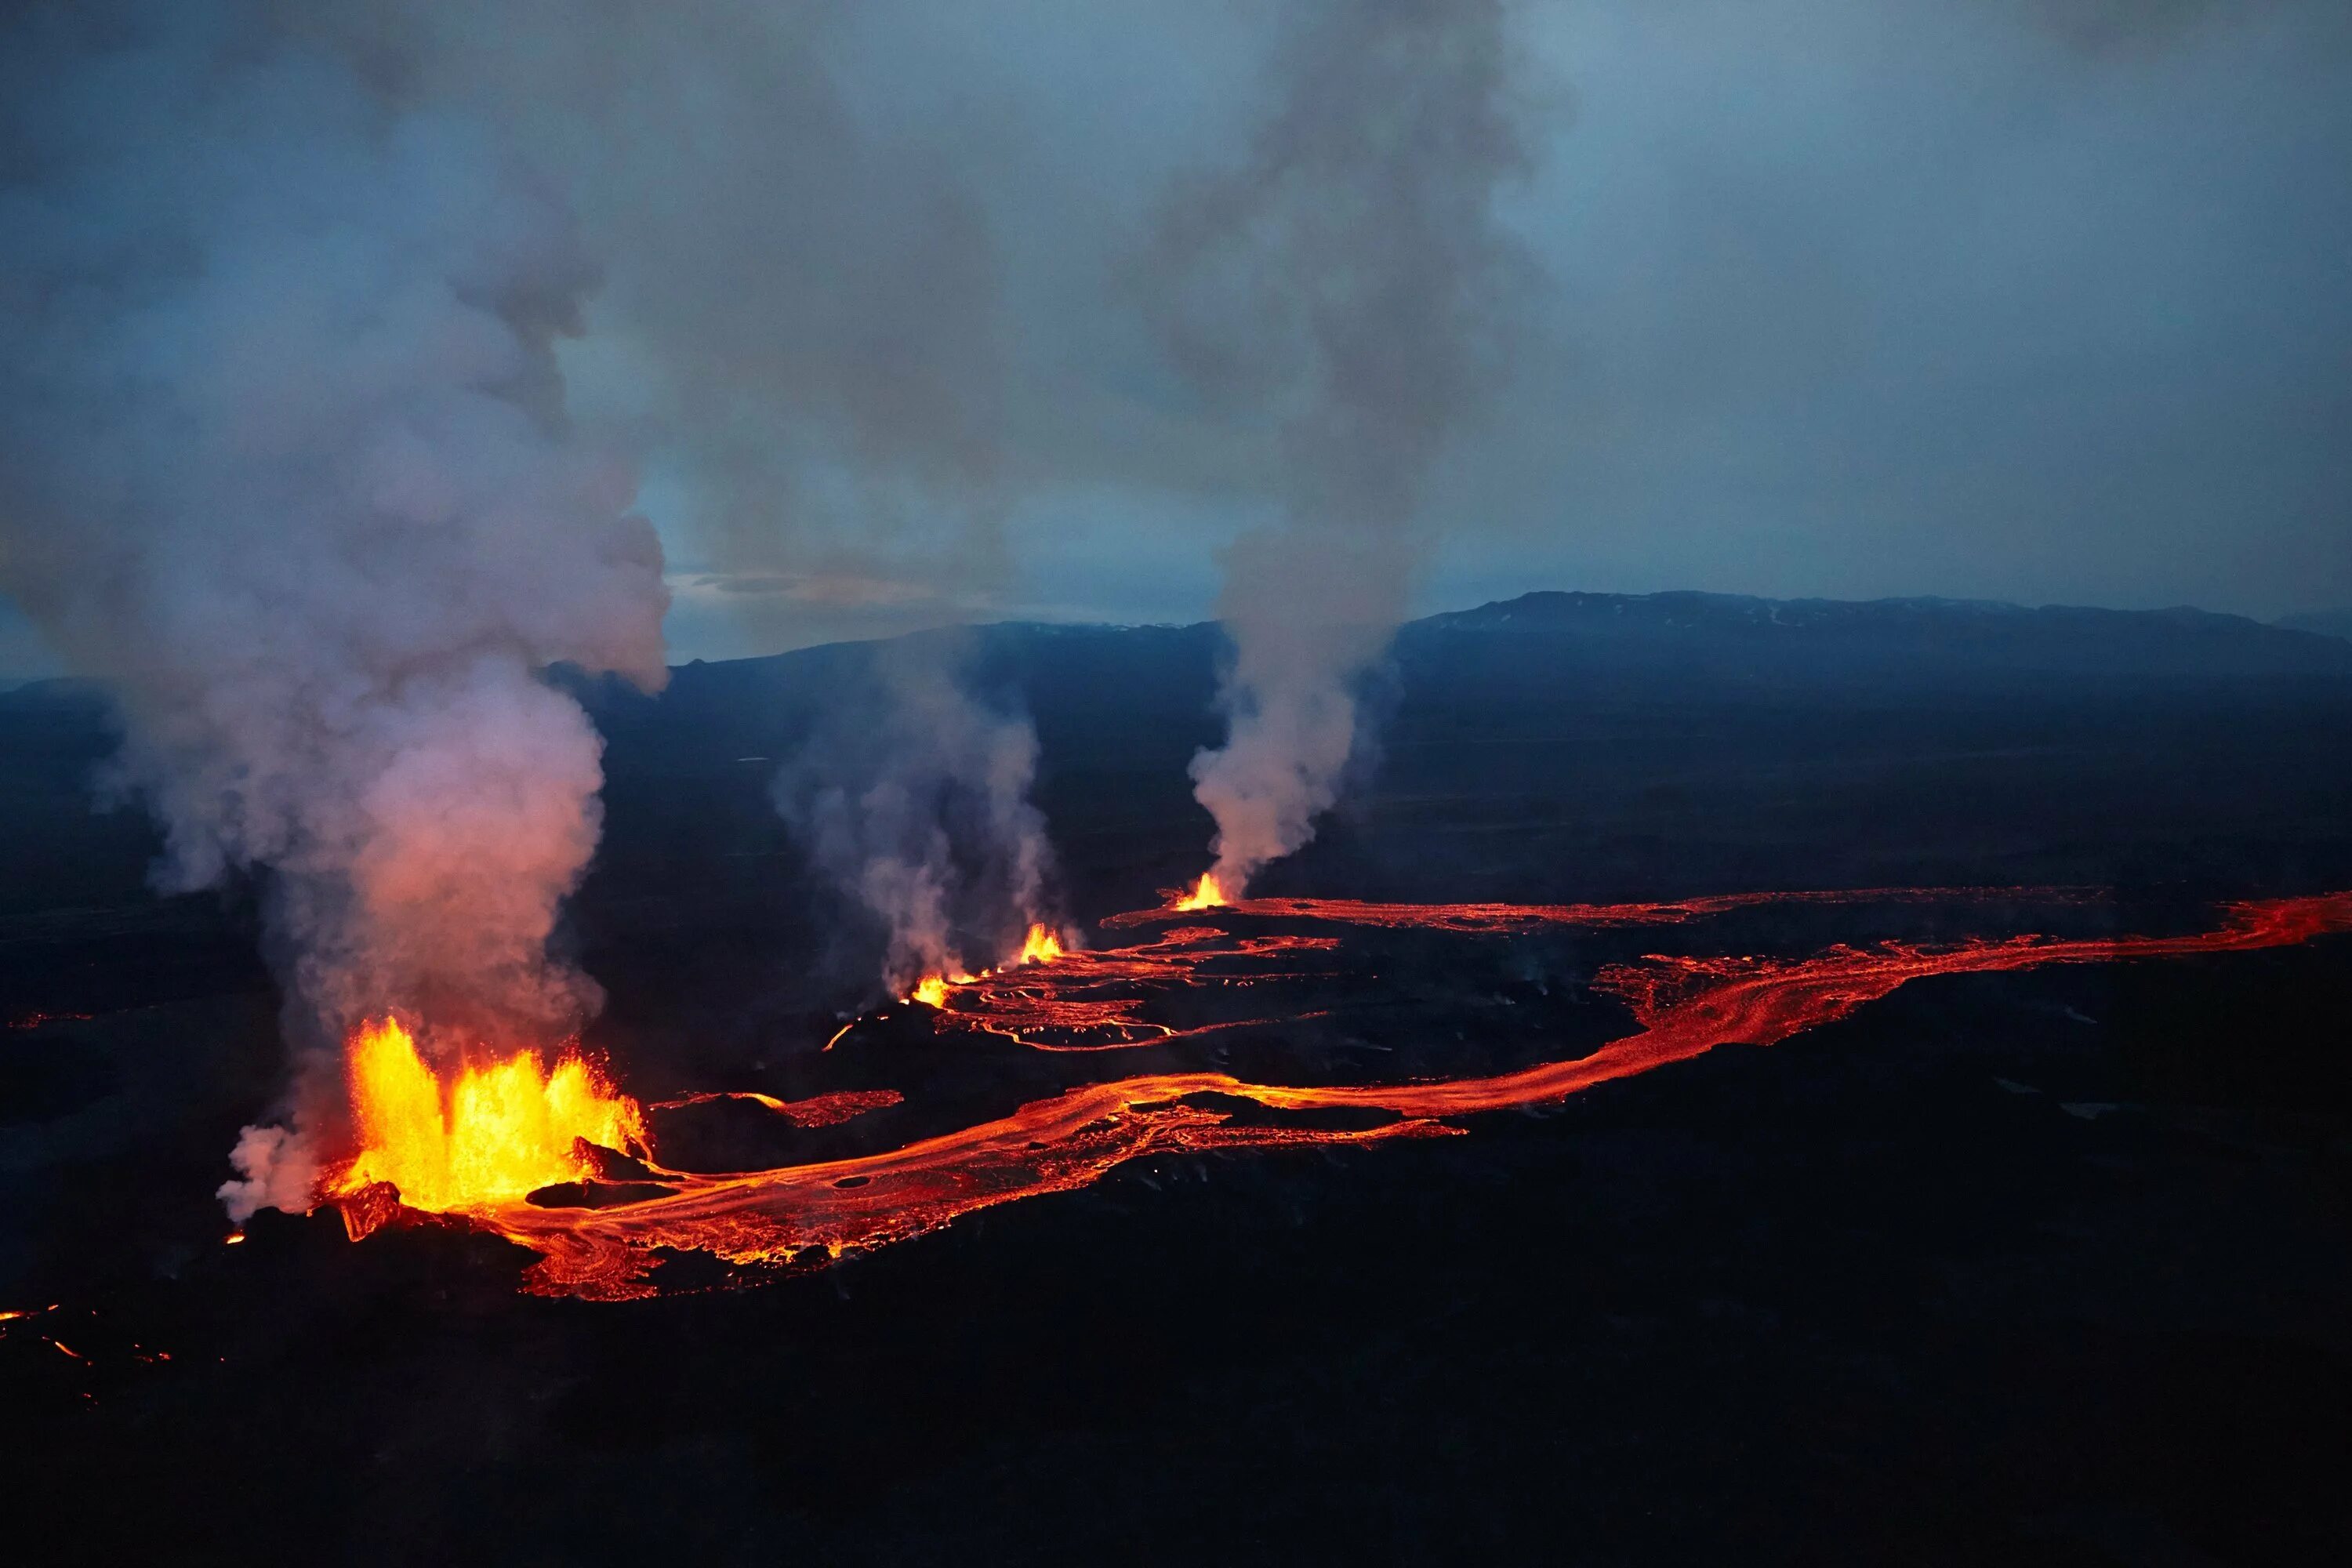 Сильные землетрясения вулканы гейзеры наблюдаются. Извержение вулкана фаградальсфьядль. Извержение фаградалсфьяль вулкана. Извержение вулкана Холухрейн, Исландия. Вулканические землетрясения.